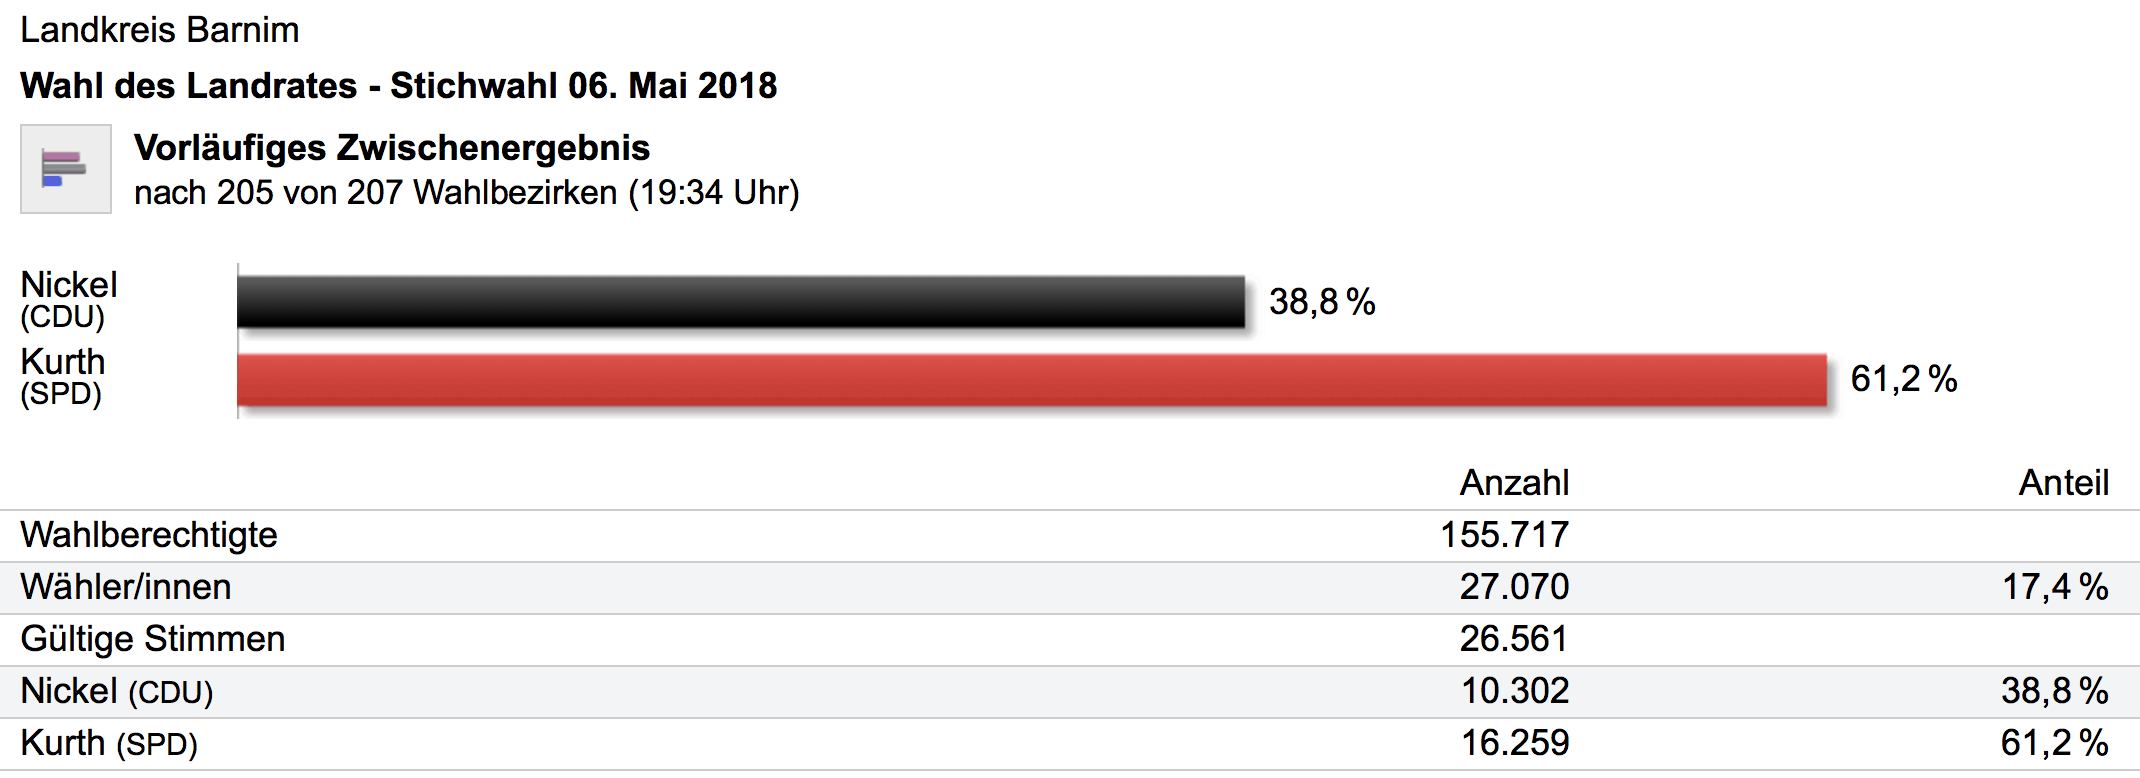 Nach vorläufigem Endergebnis und Auszählung der Wählerstimmen konnte Daniel Kurth (SPD) die Wahl zwar für sich entscheiden, dennoch kommt es aufgrund des fehlenden Quorums von 15% aller Wahlberechtigten, zur Wahl des Landrates durch den Kreistag.